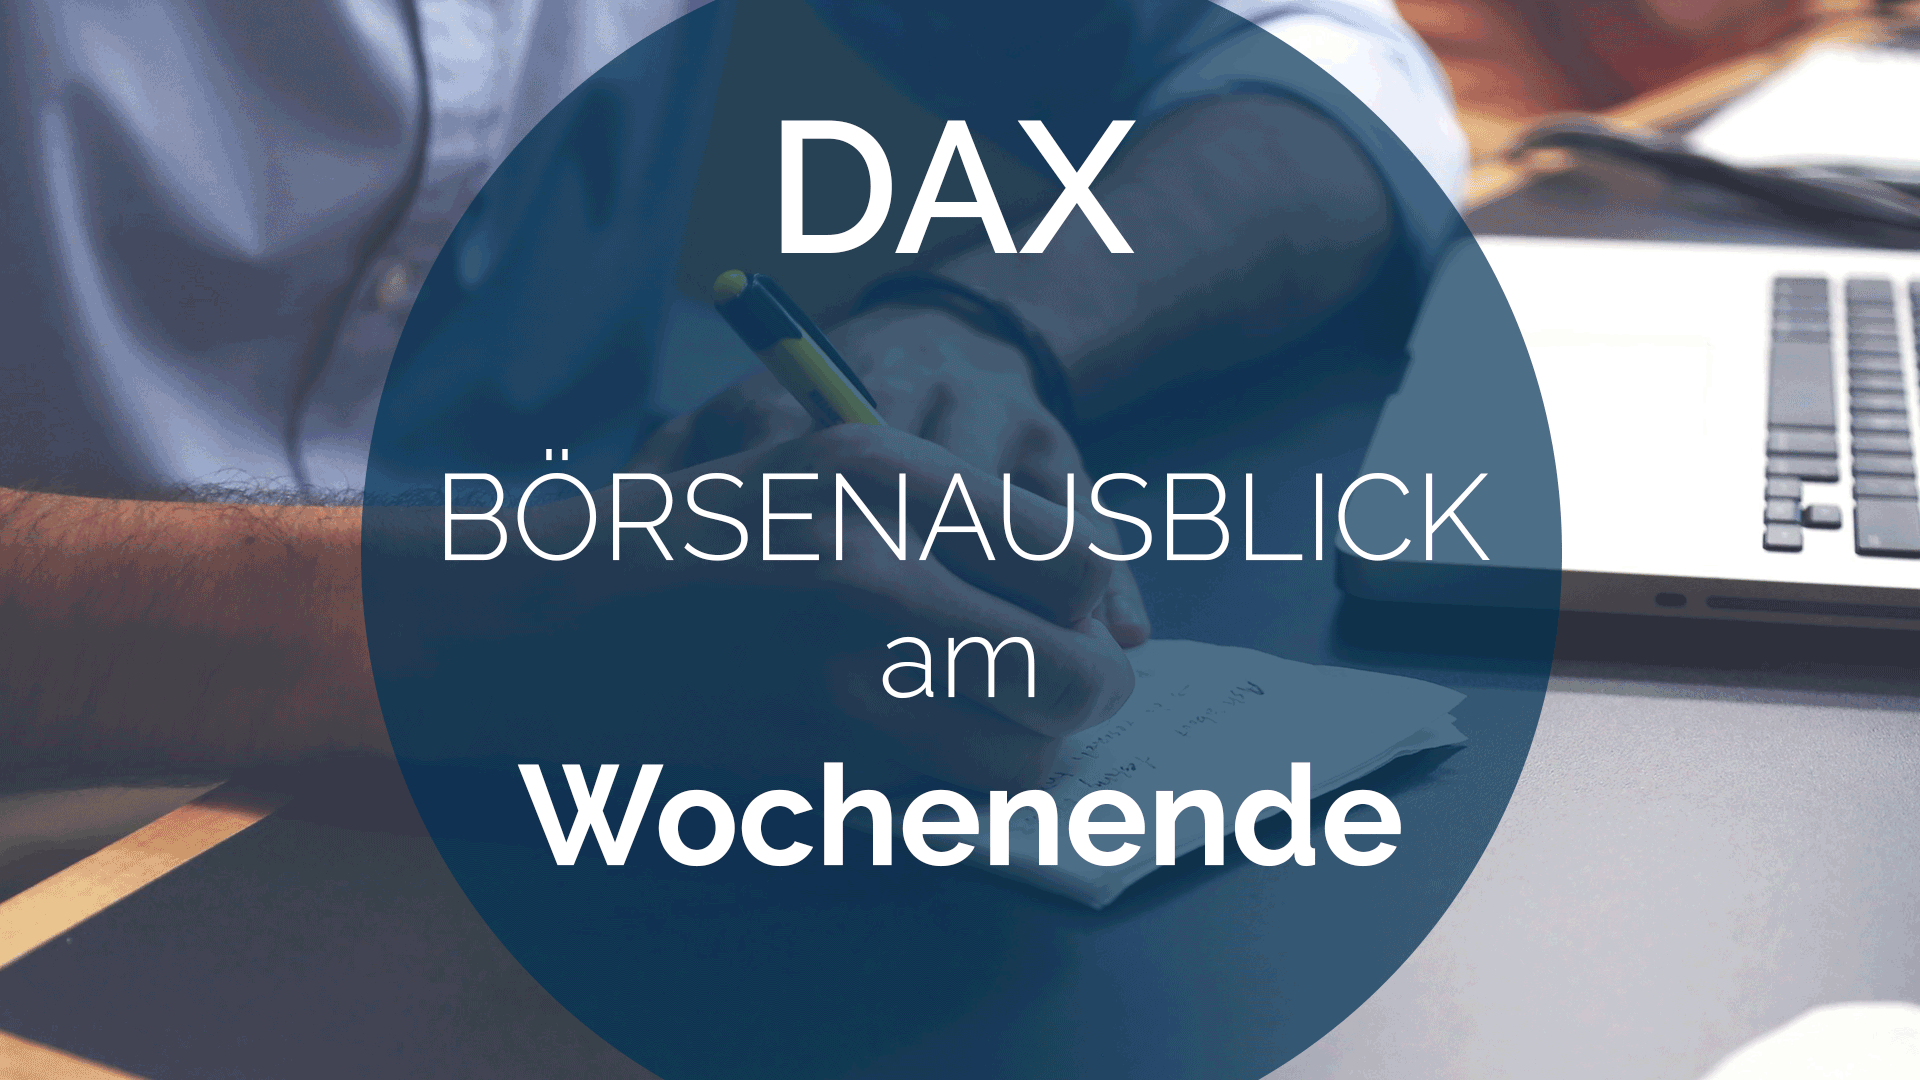 202304_AndreasBernstein_WOCHENAUSBLICK-DAX